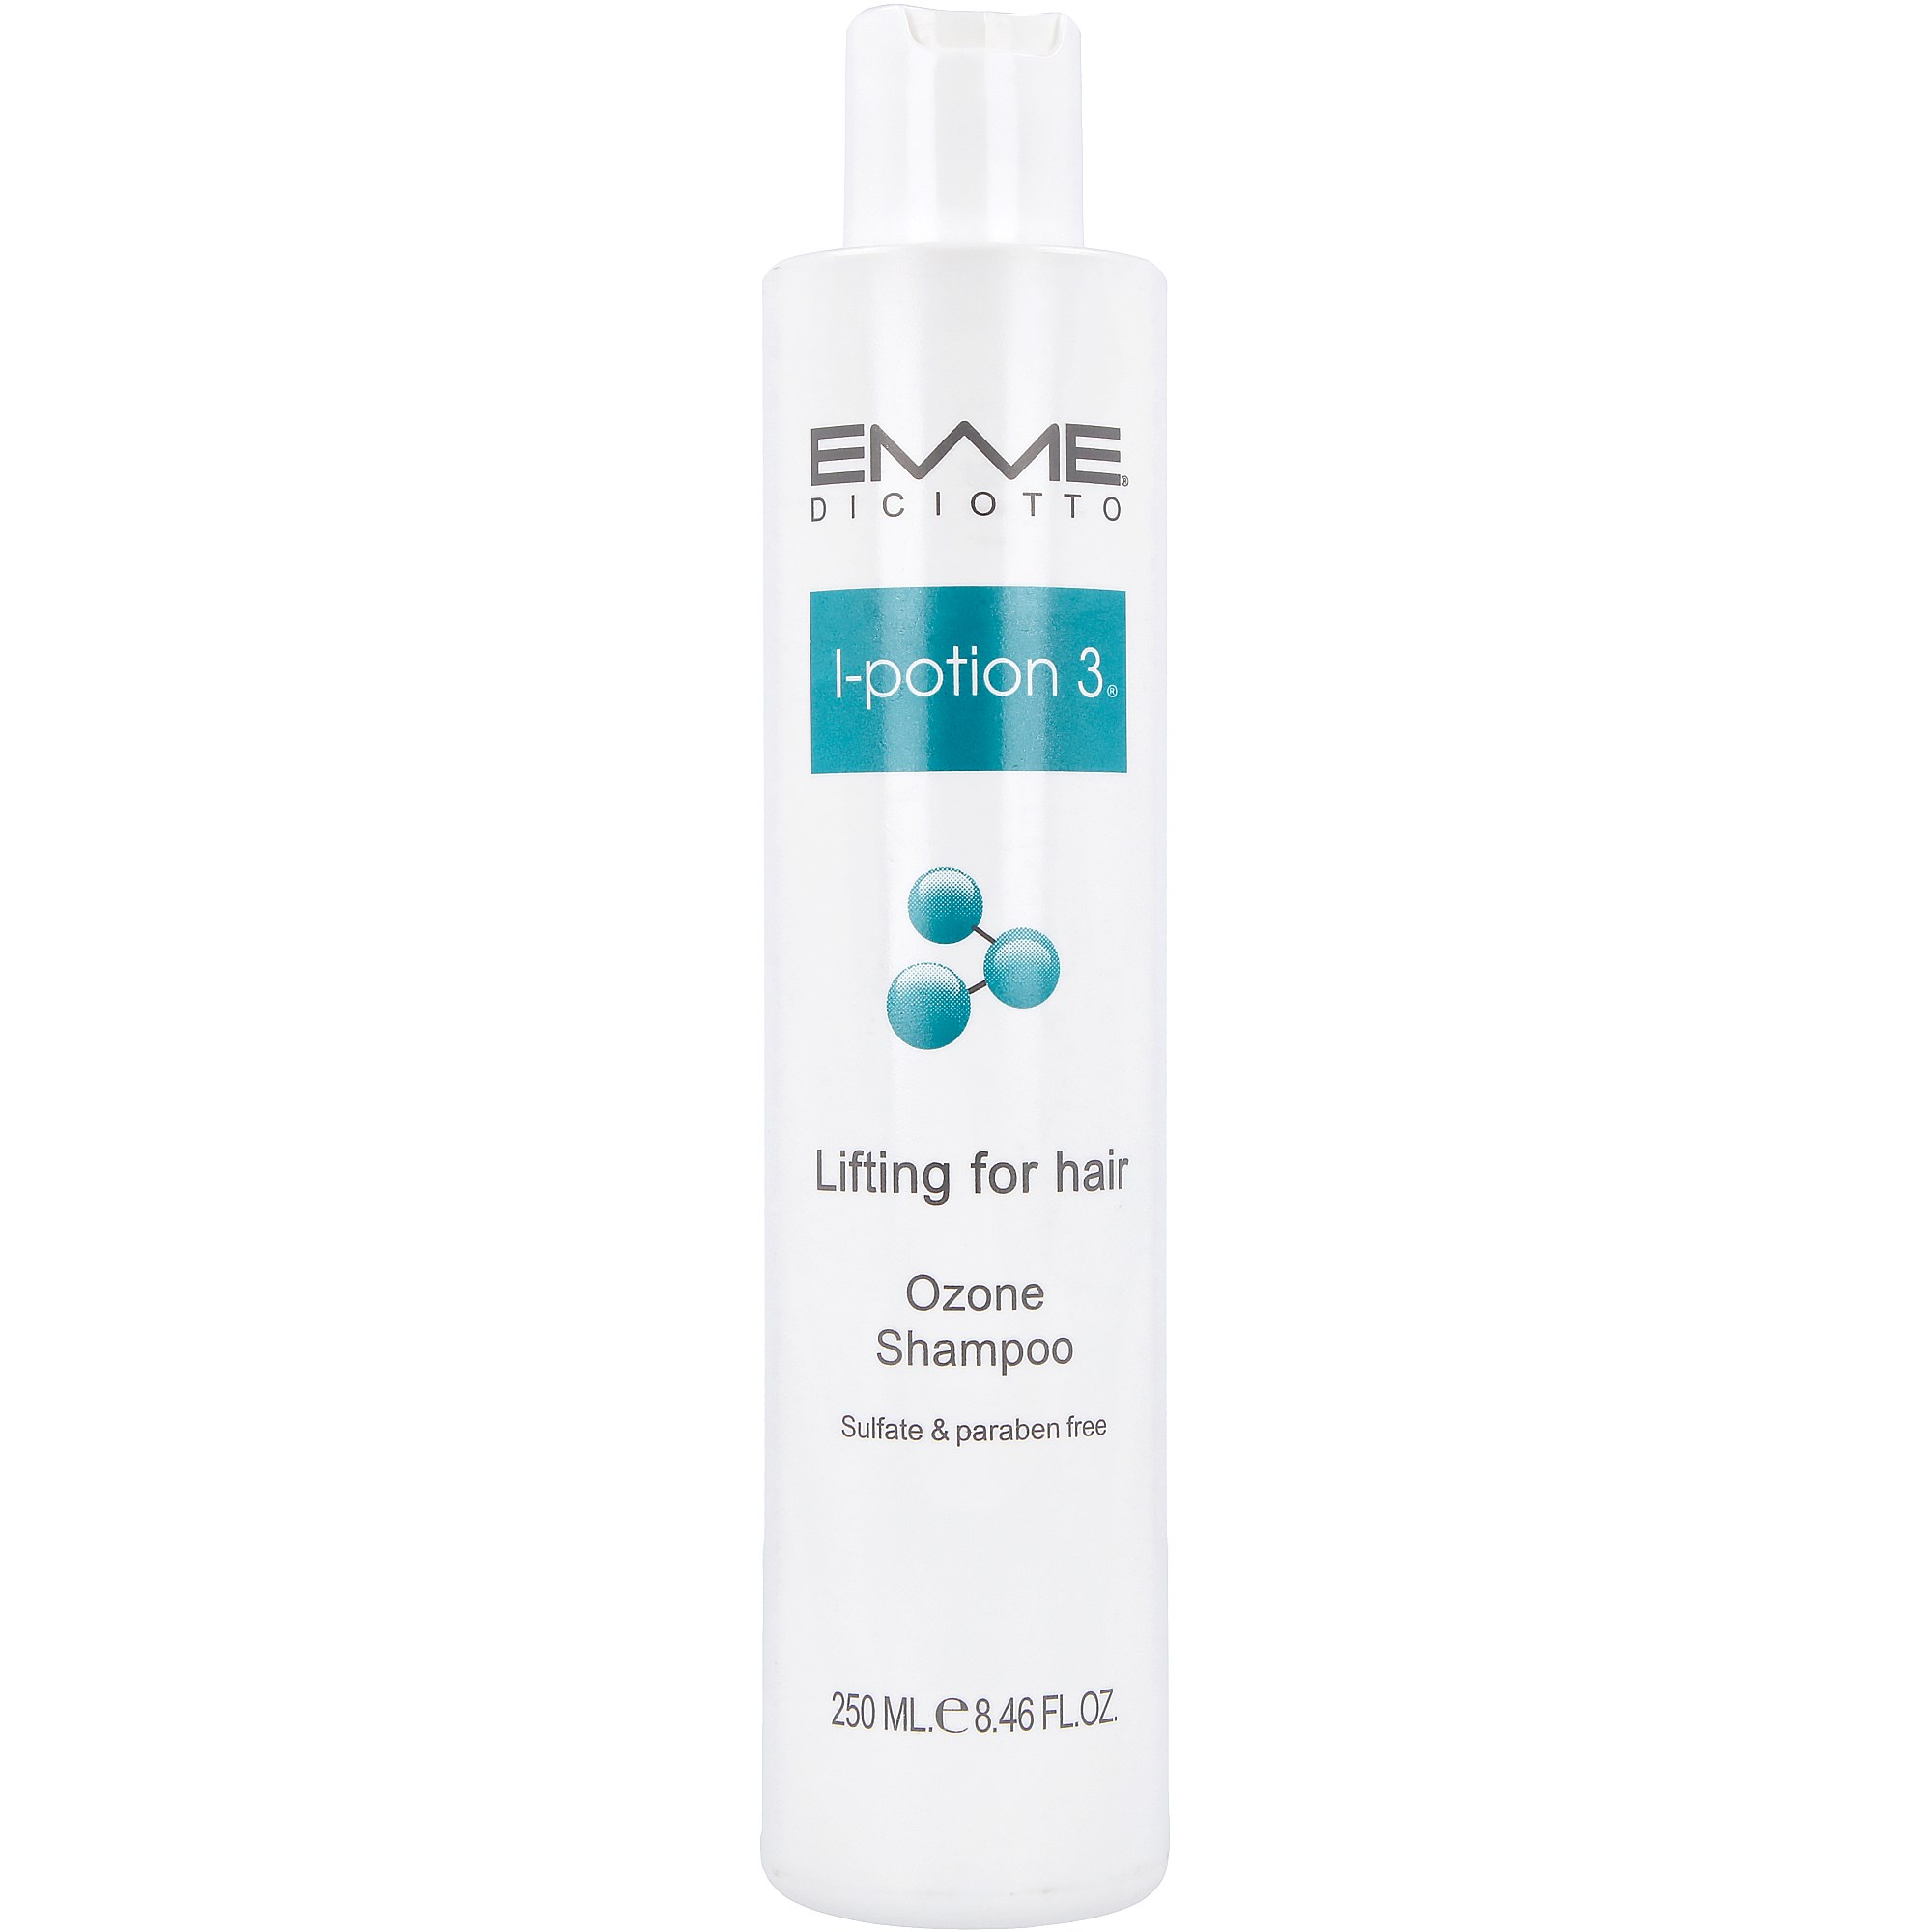 Emmediciotto I-Potion 3 Lifting For Hair Ozone Shampoo 250 ml